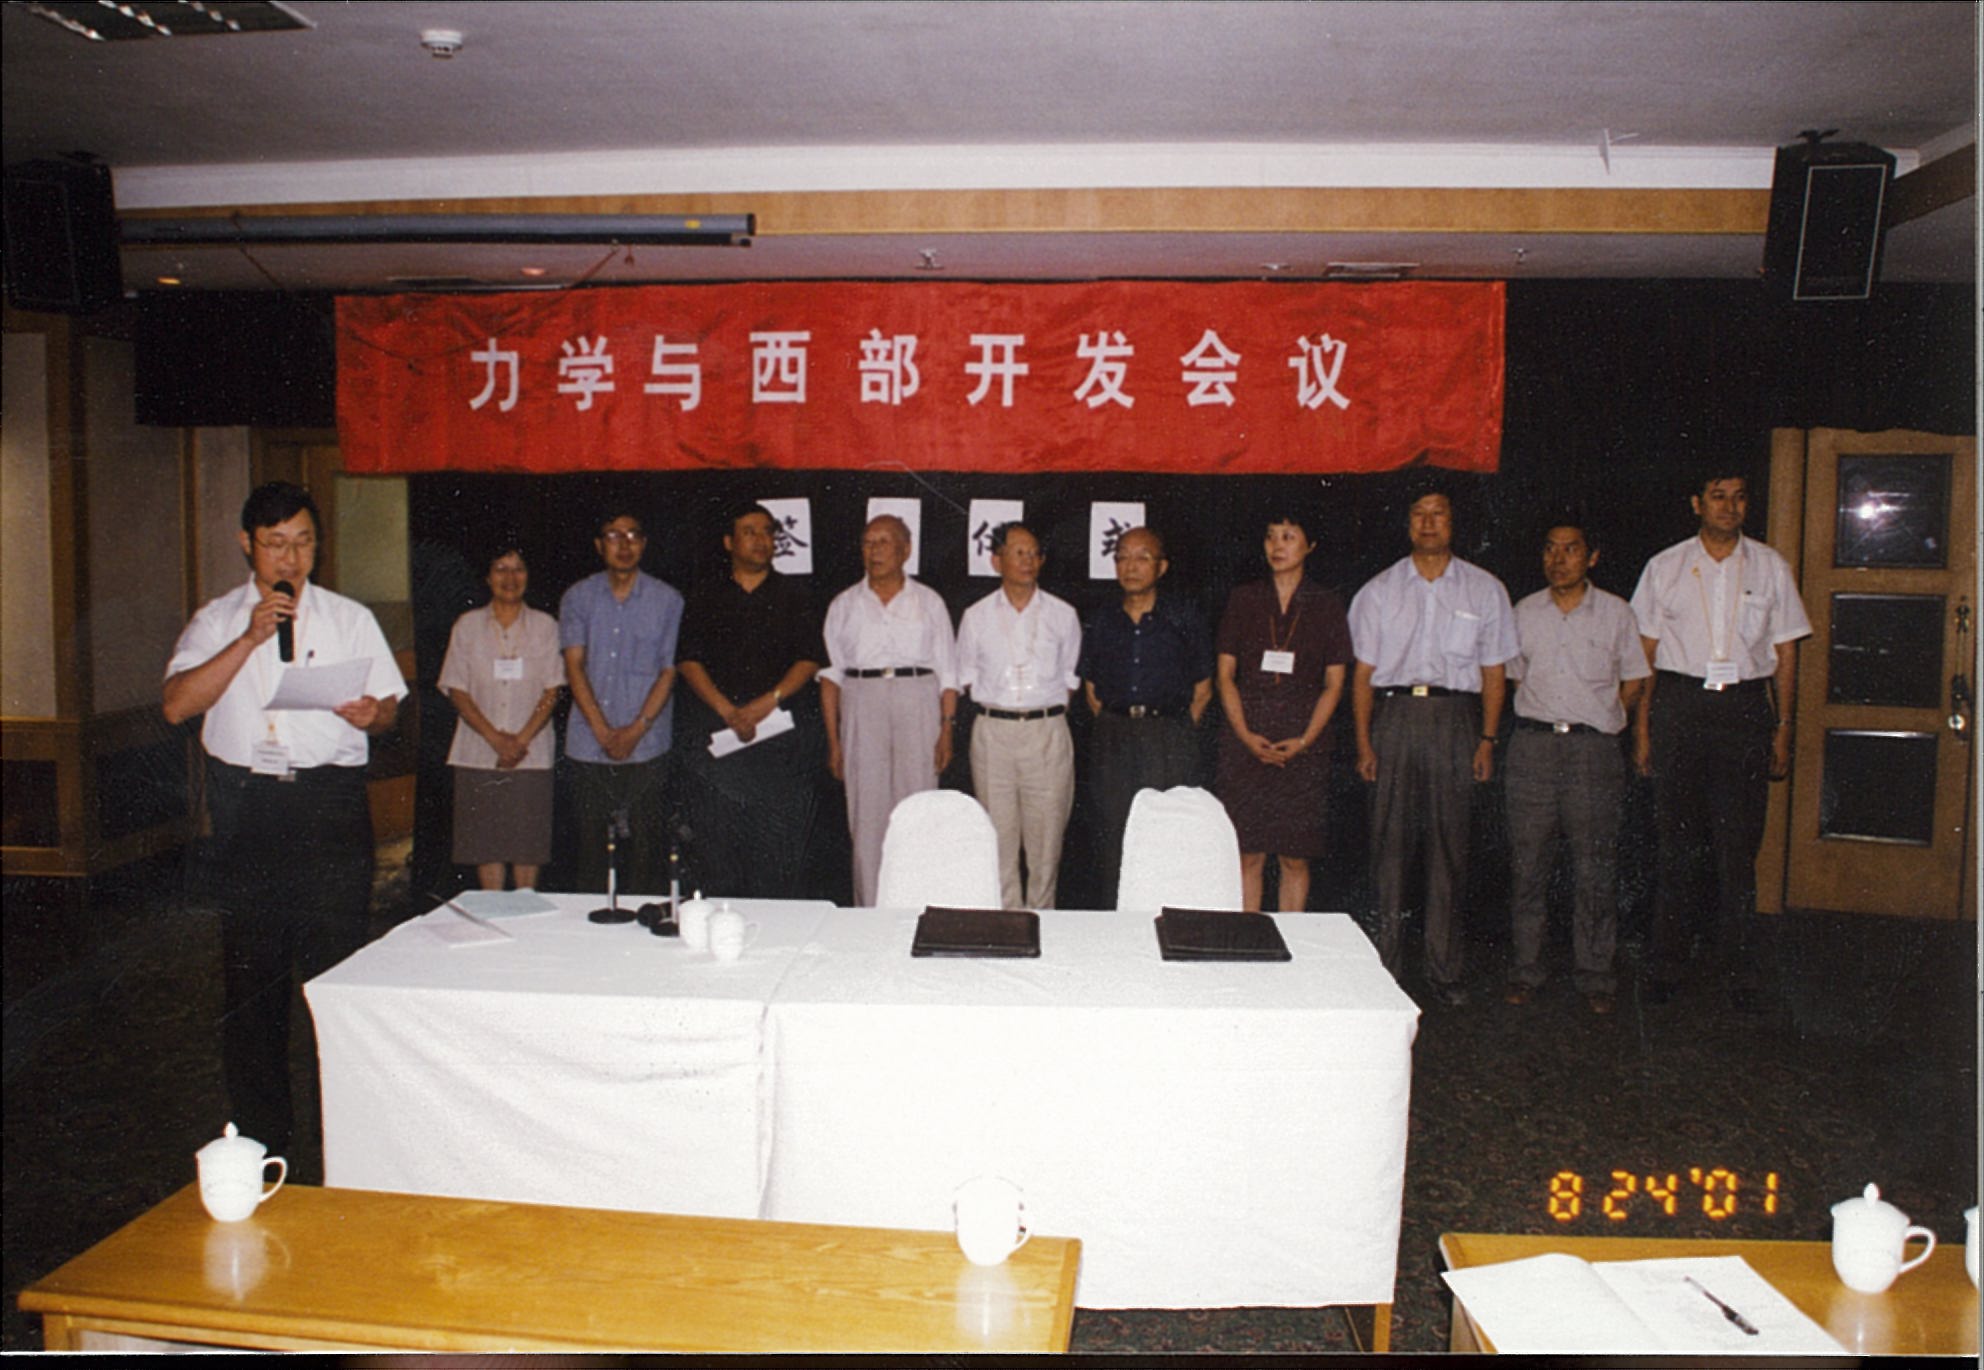 在新疆首都乌鲁木齐市召开“力学与西部开发”会议（2001年8月23日~26日），白以龙出席会议。